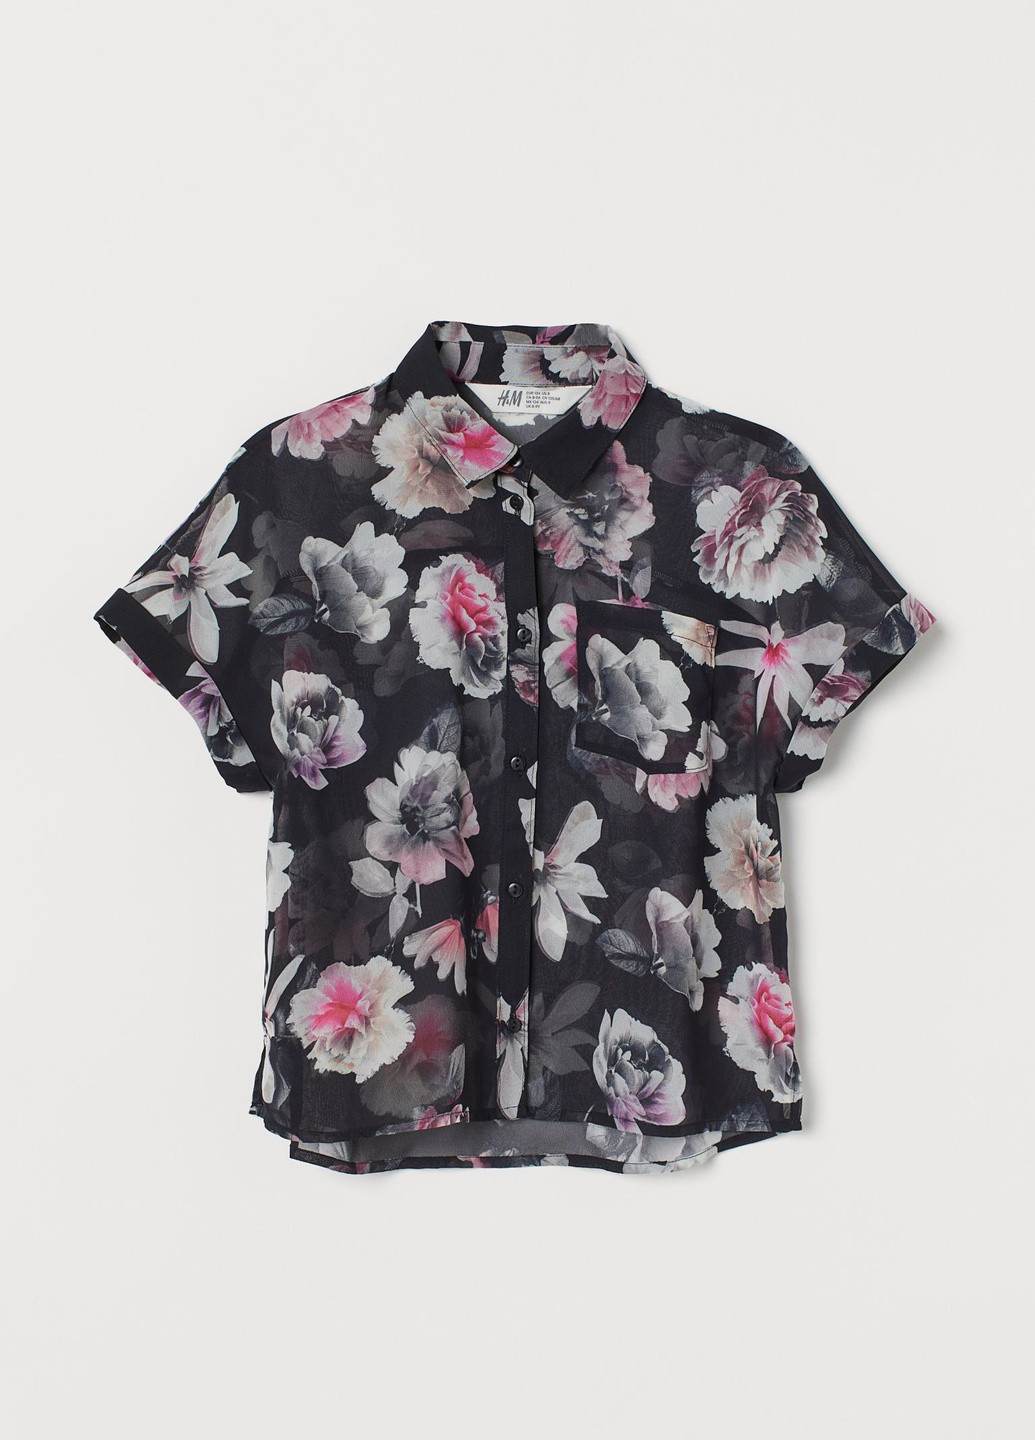 Черная цветочной расцветки блузка H&M летняя